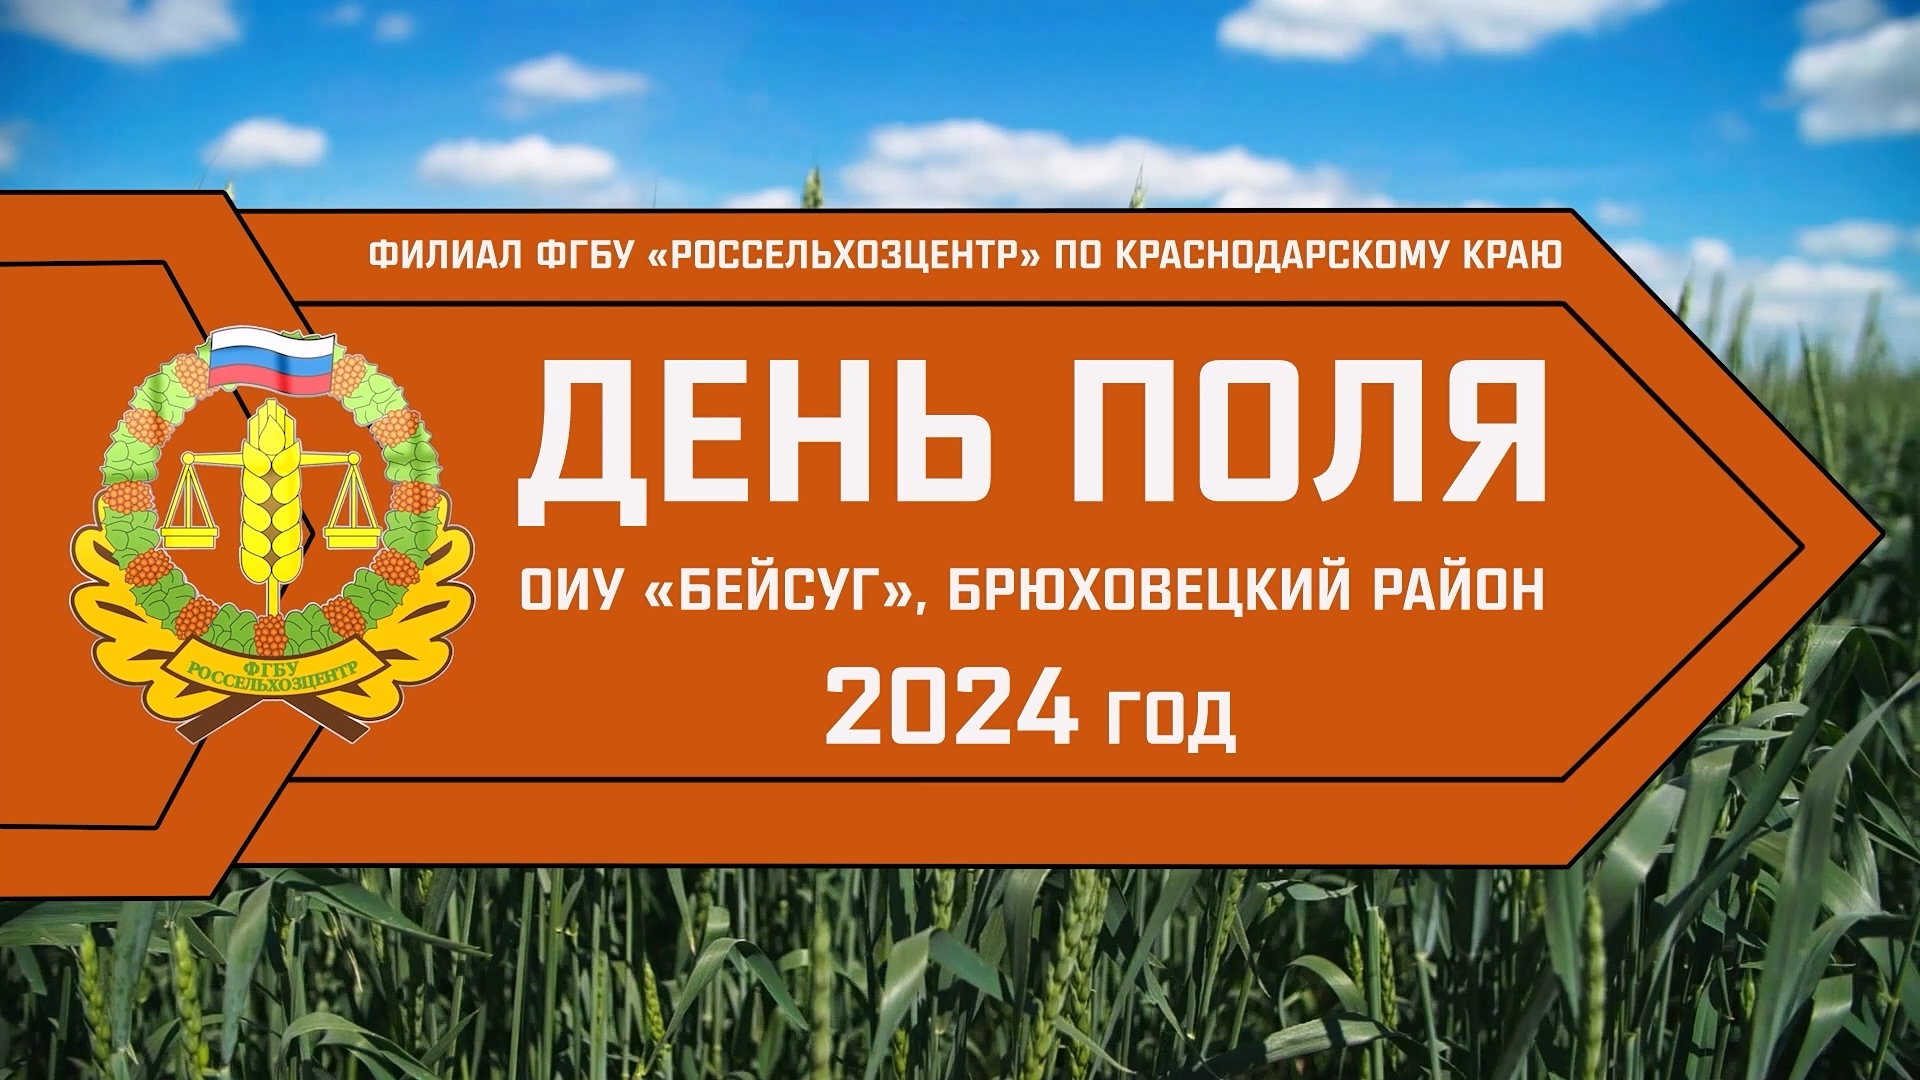 Россельхозцентр 2024